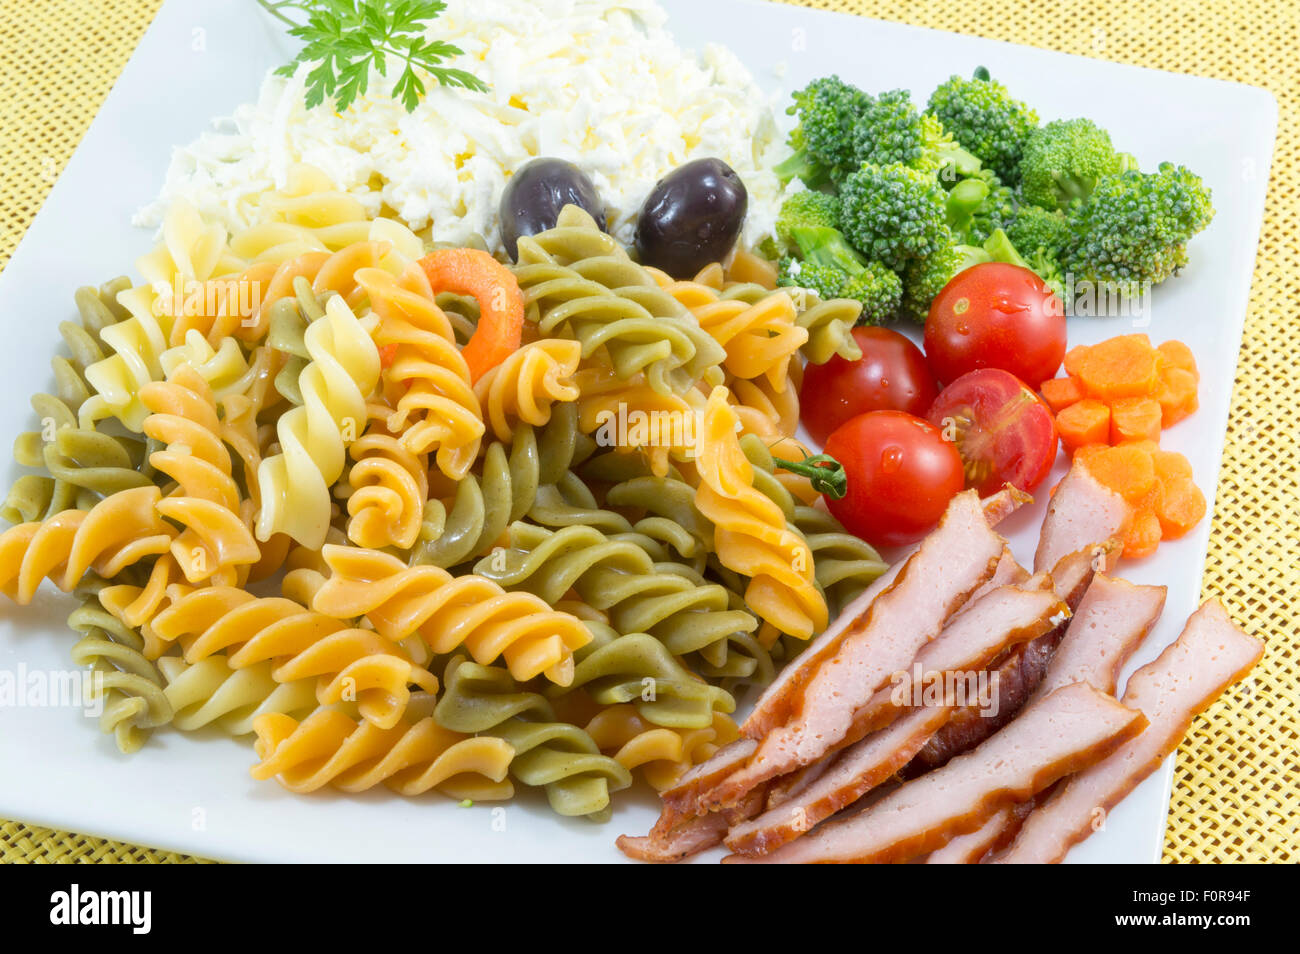 Farbige Pasta serviert auf einem weißen Teller mit Käse, Oliven, Brokkoli, Cherry-Tomaten und geräuchertem Fleischscheiben Stockfoto